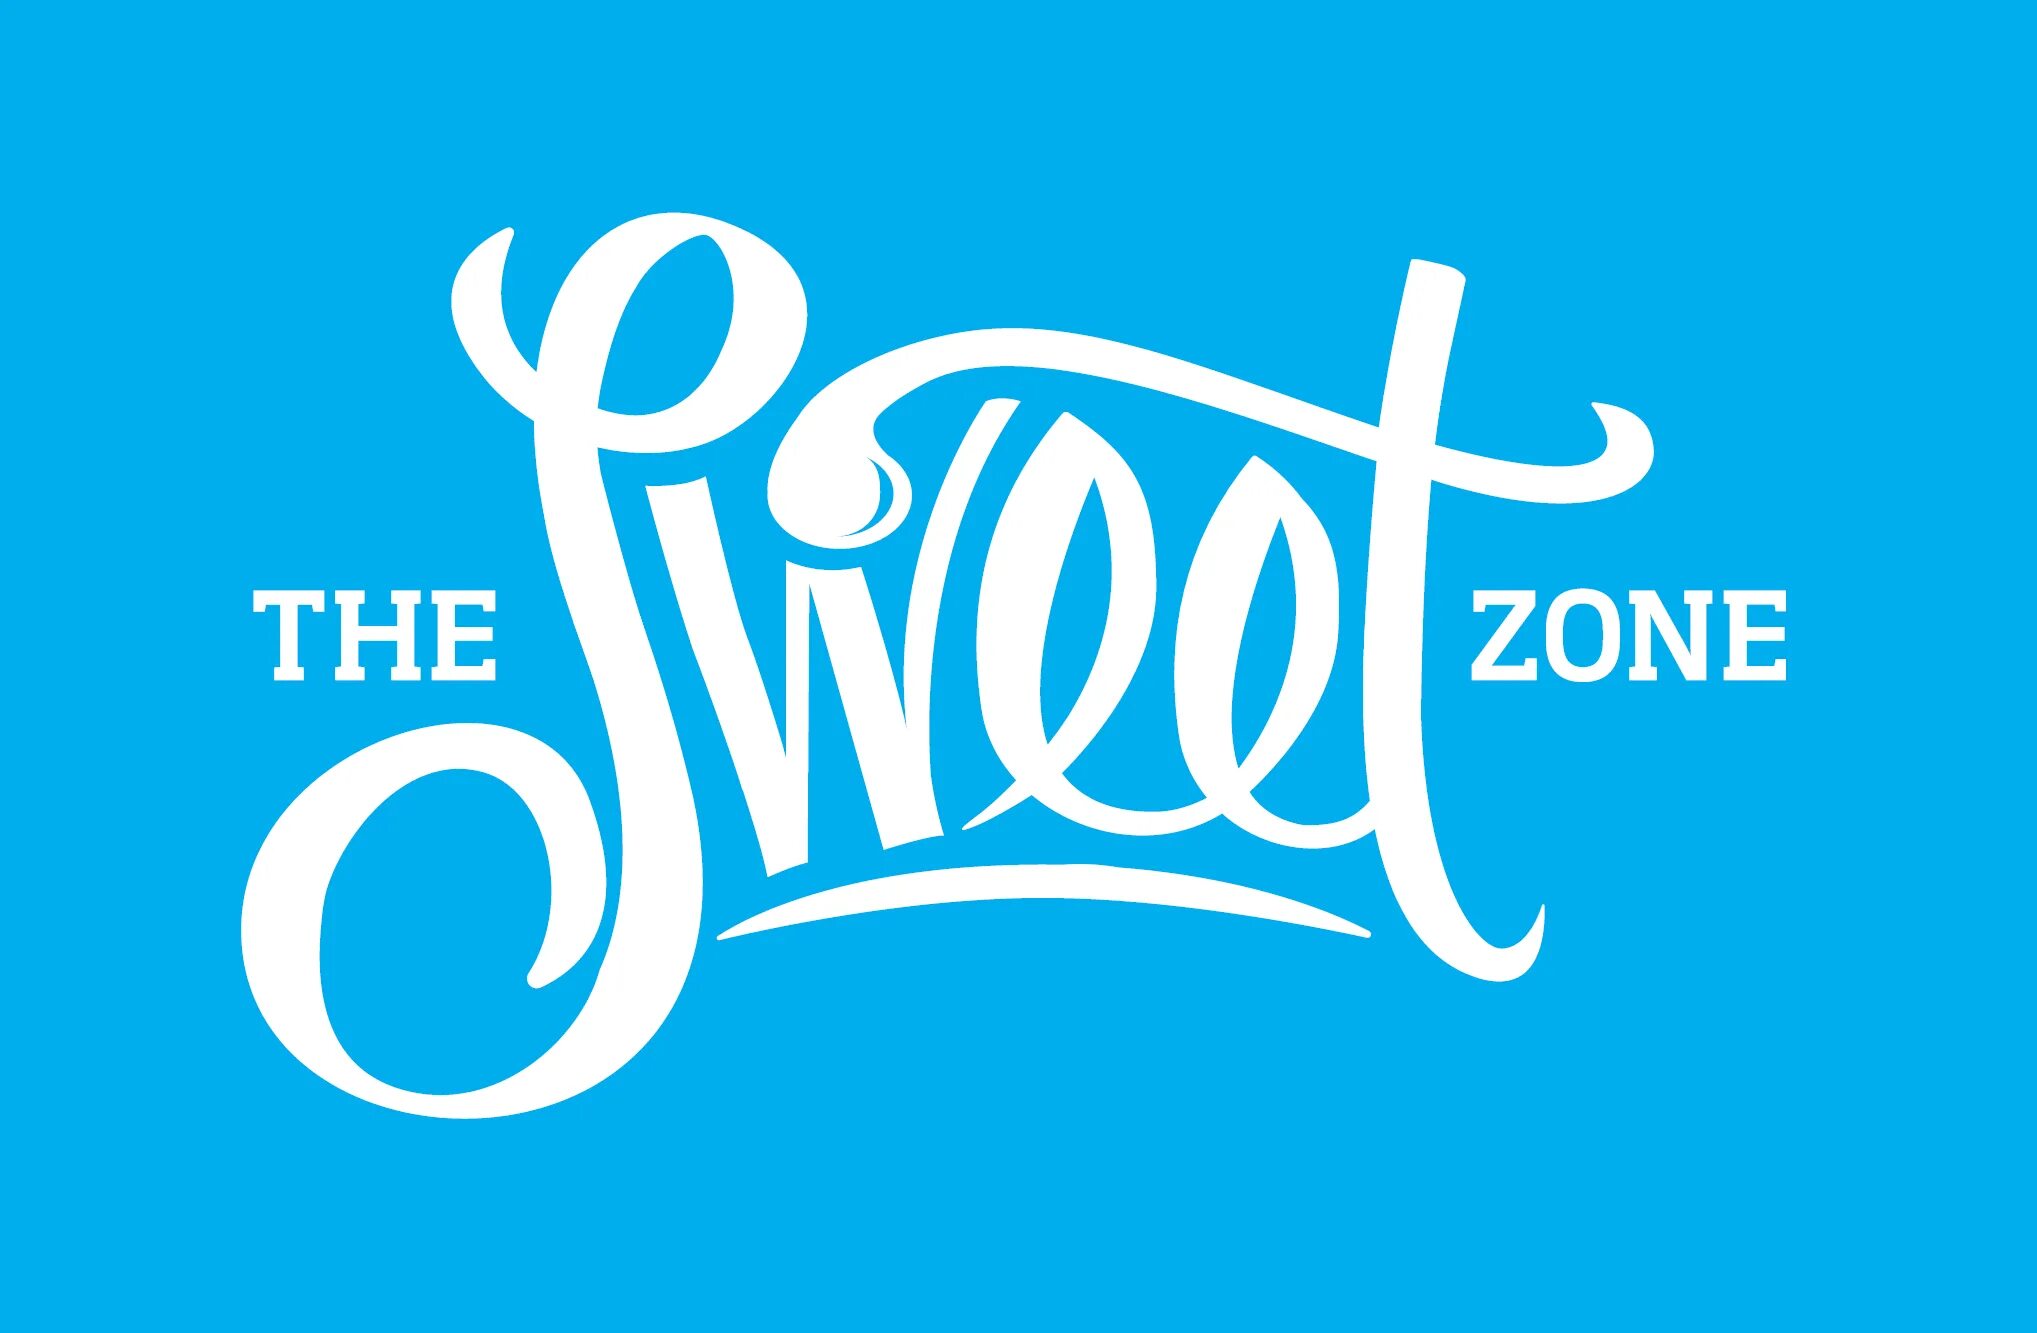 Sweet sweetiebonanza com. Sweet Zone. Sweet Zone logo. Sweet Zone баннер. Logon for Sweet Zone.